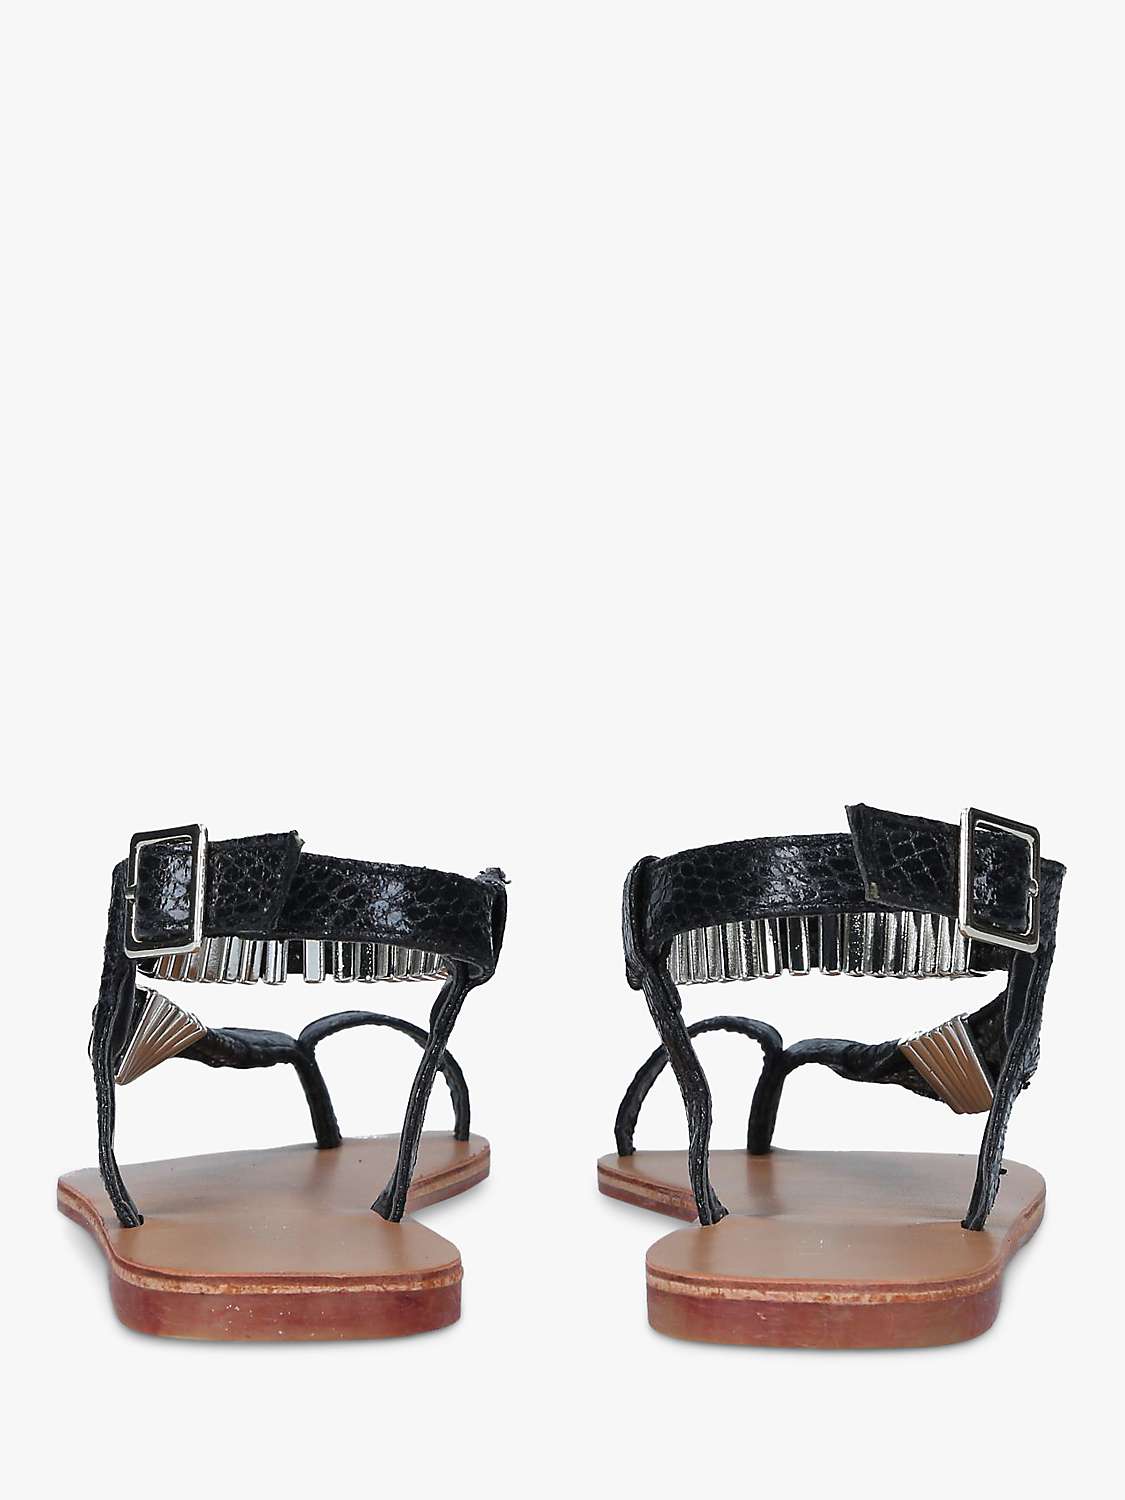 Buy Carvela Klipper Sandals, Black Online at johnlewis.com